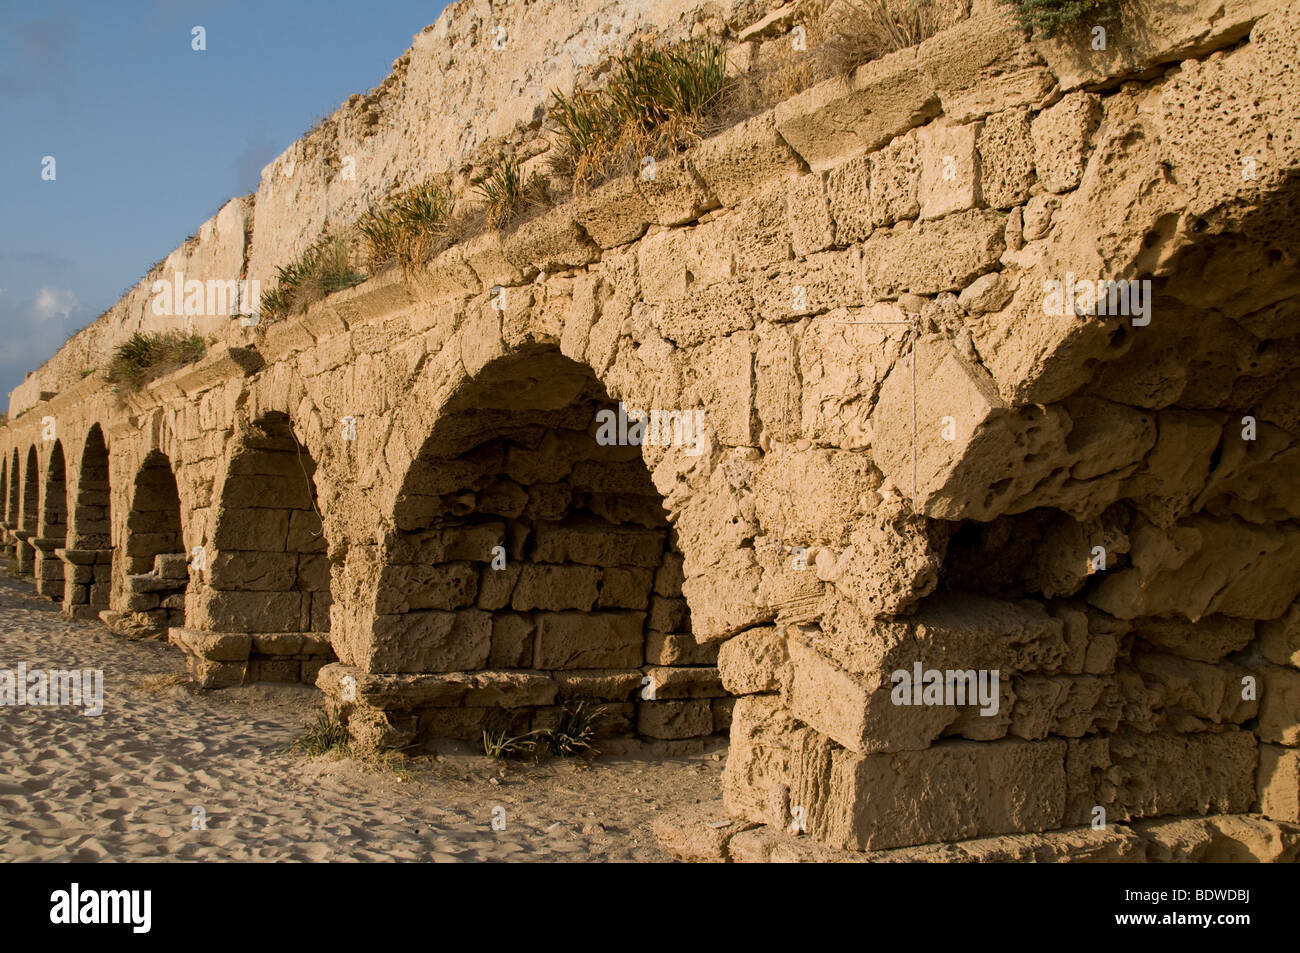 View of the aqueduct in Caesarea, Israel Stock Photo